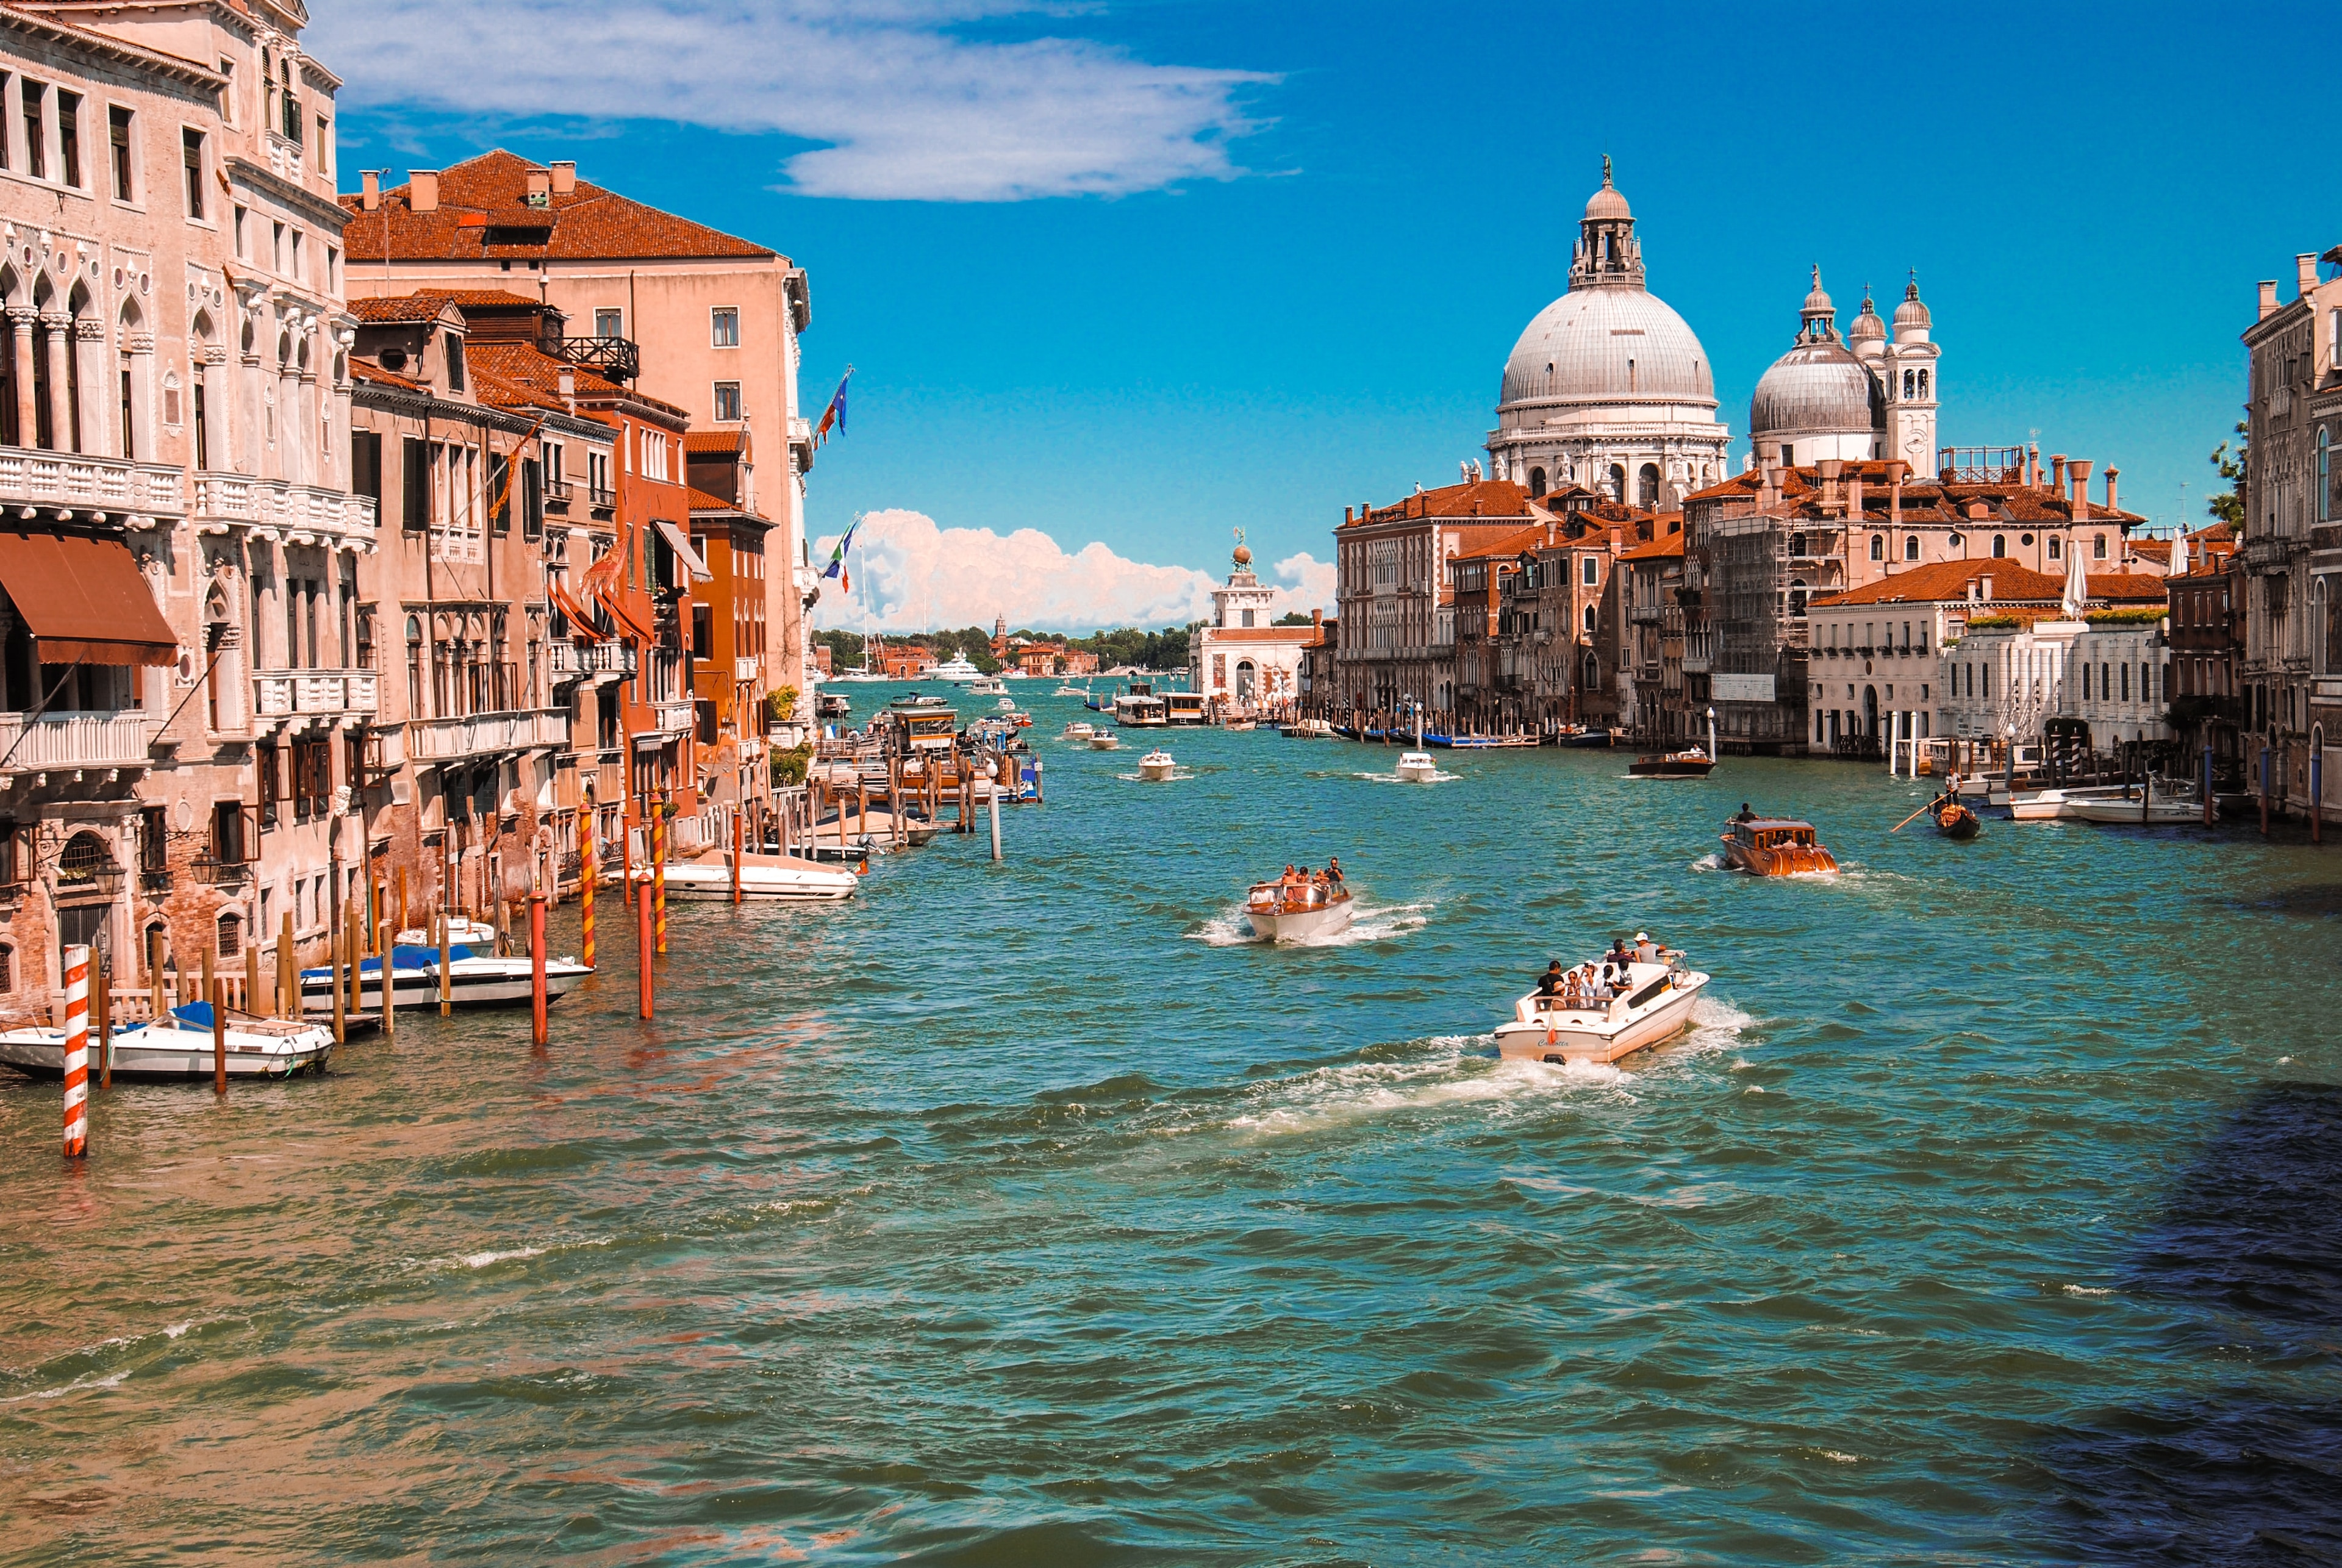 A Fairy Tale awaits You on the Grand Canal Venice